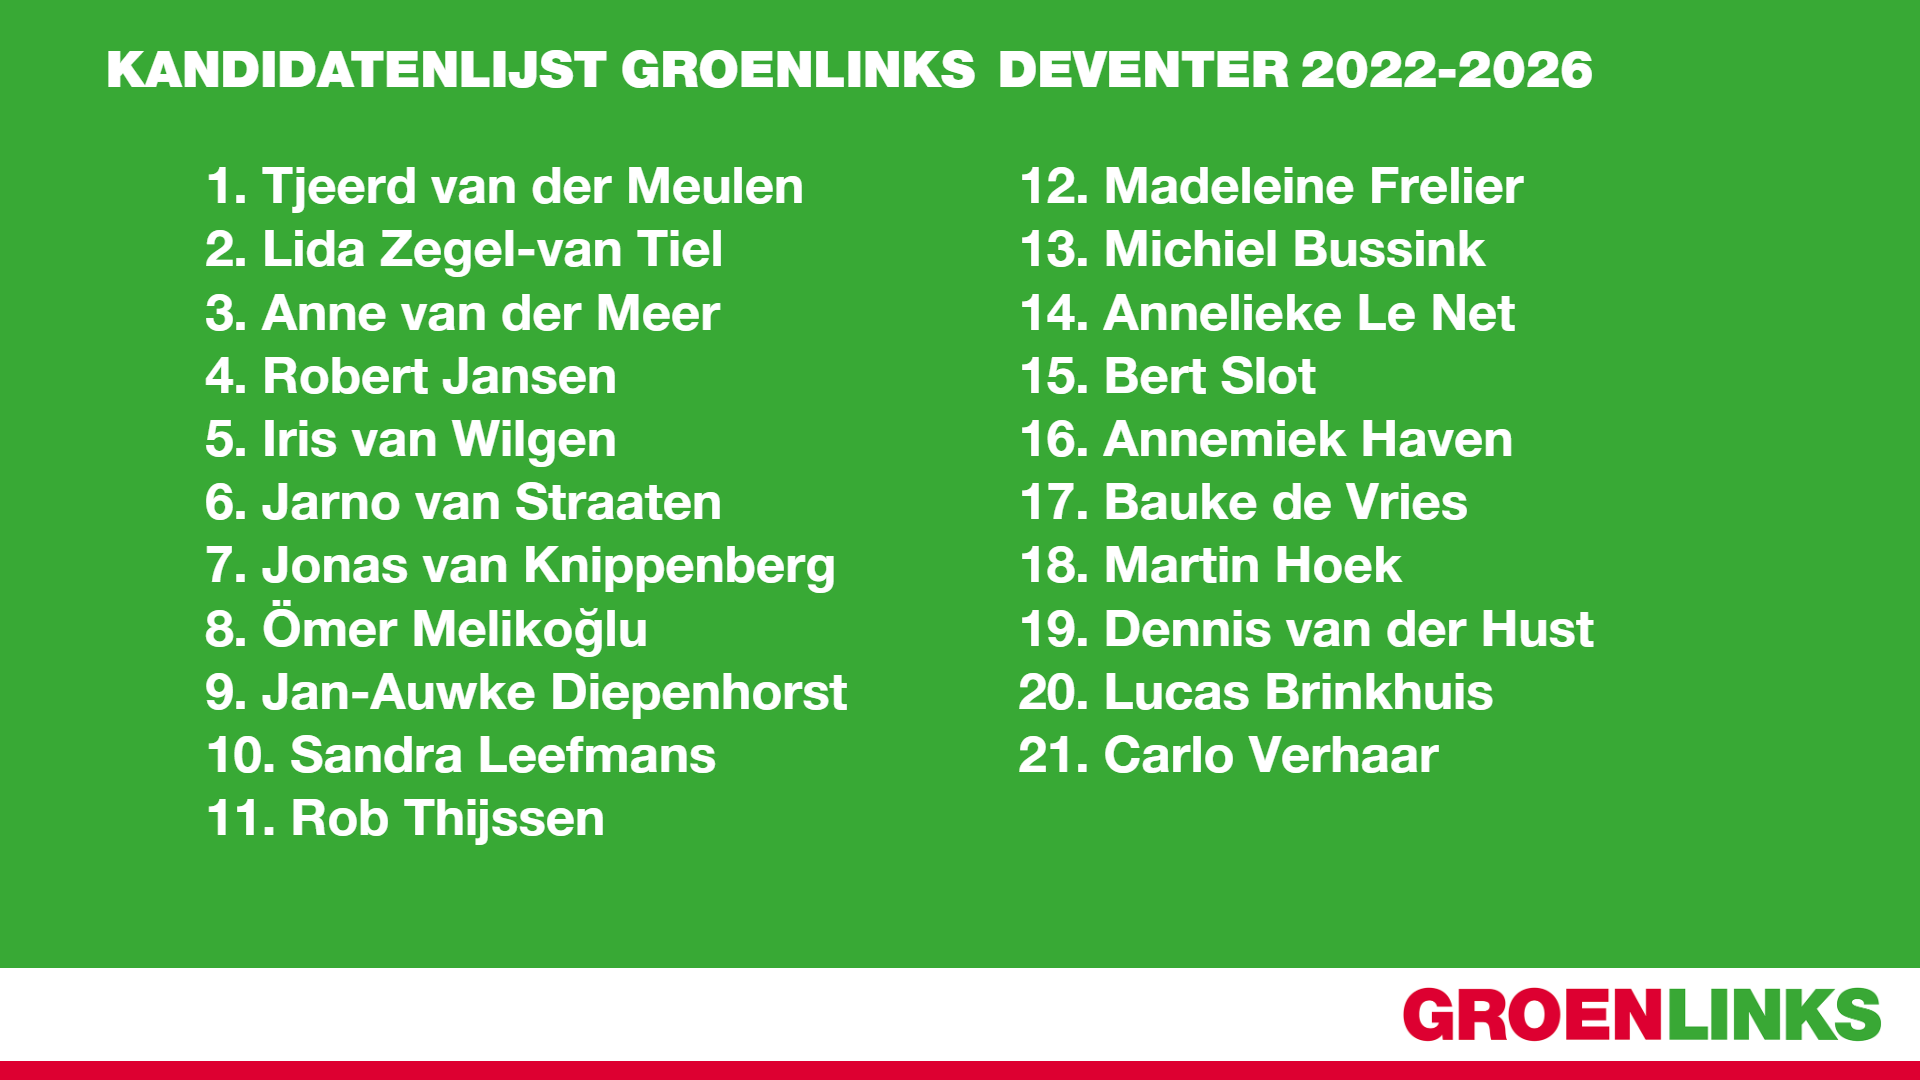 De kandidatenlijst van GroenLinks Deventer voor de gemeenteraadsverkiezingen van 2022